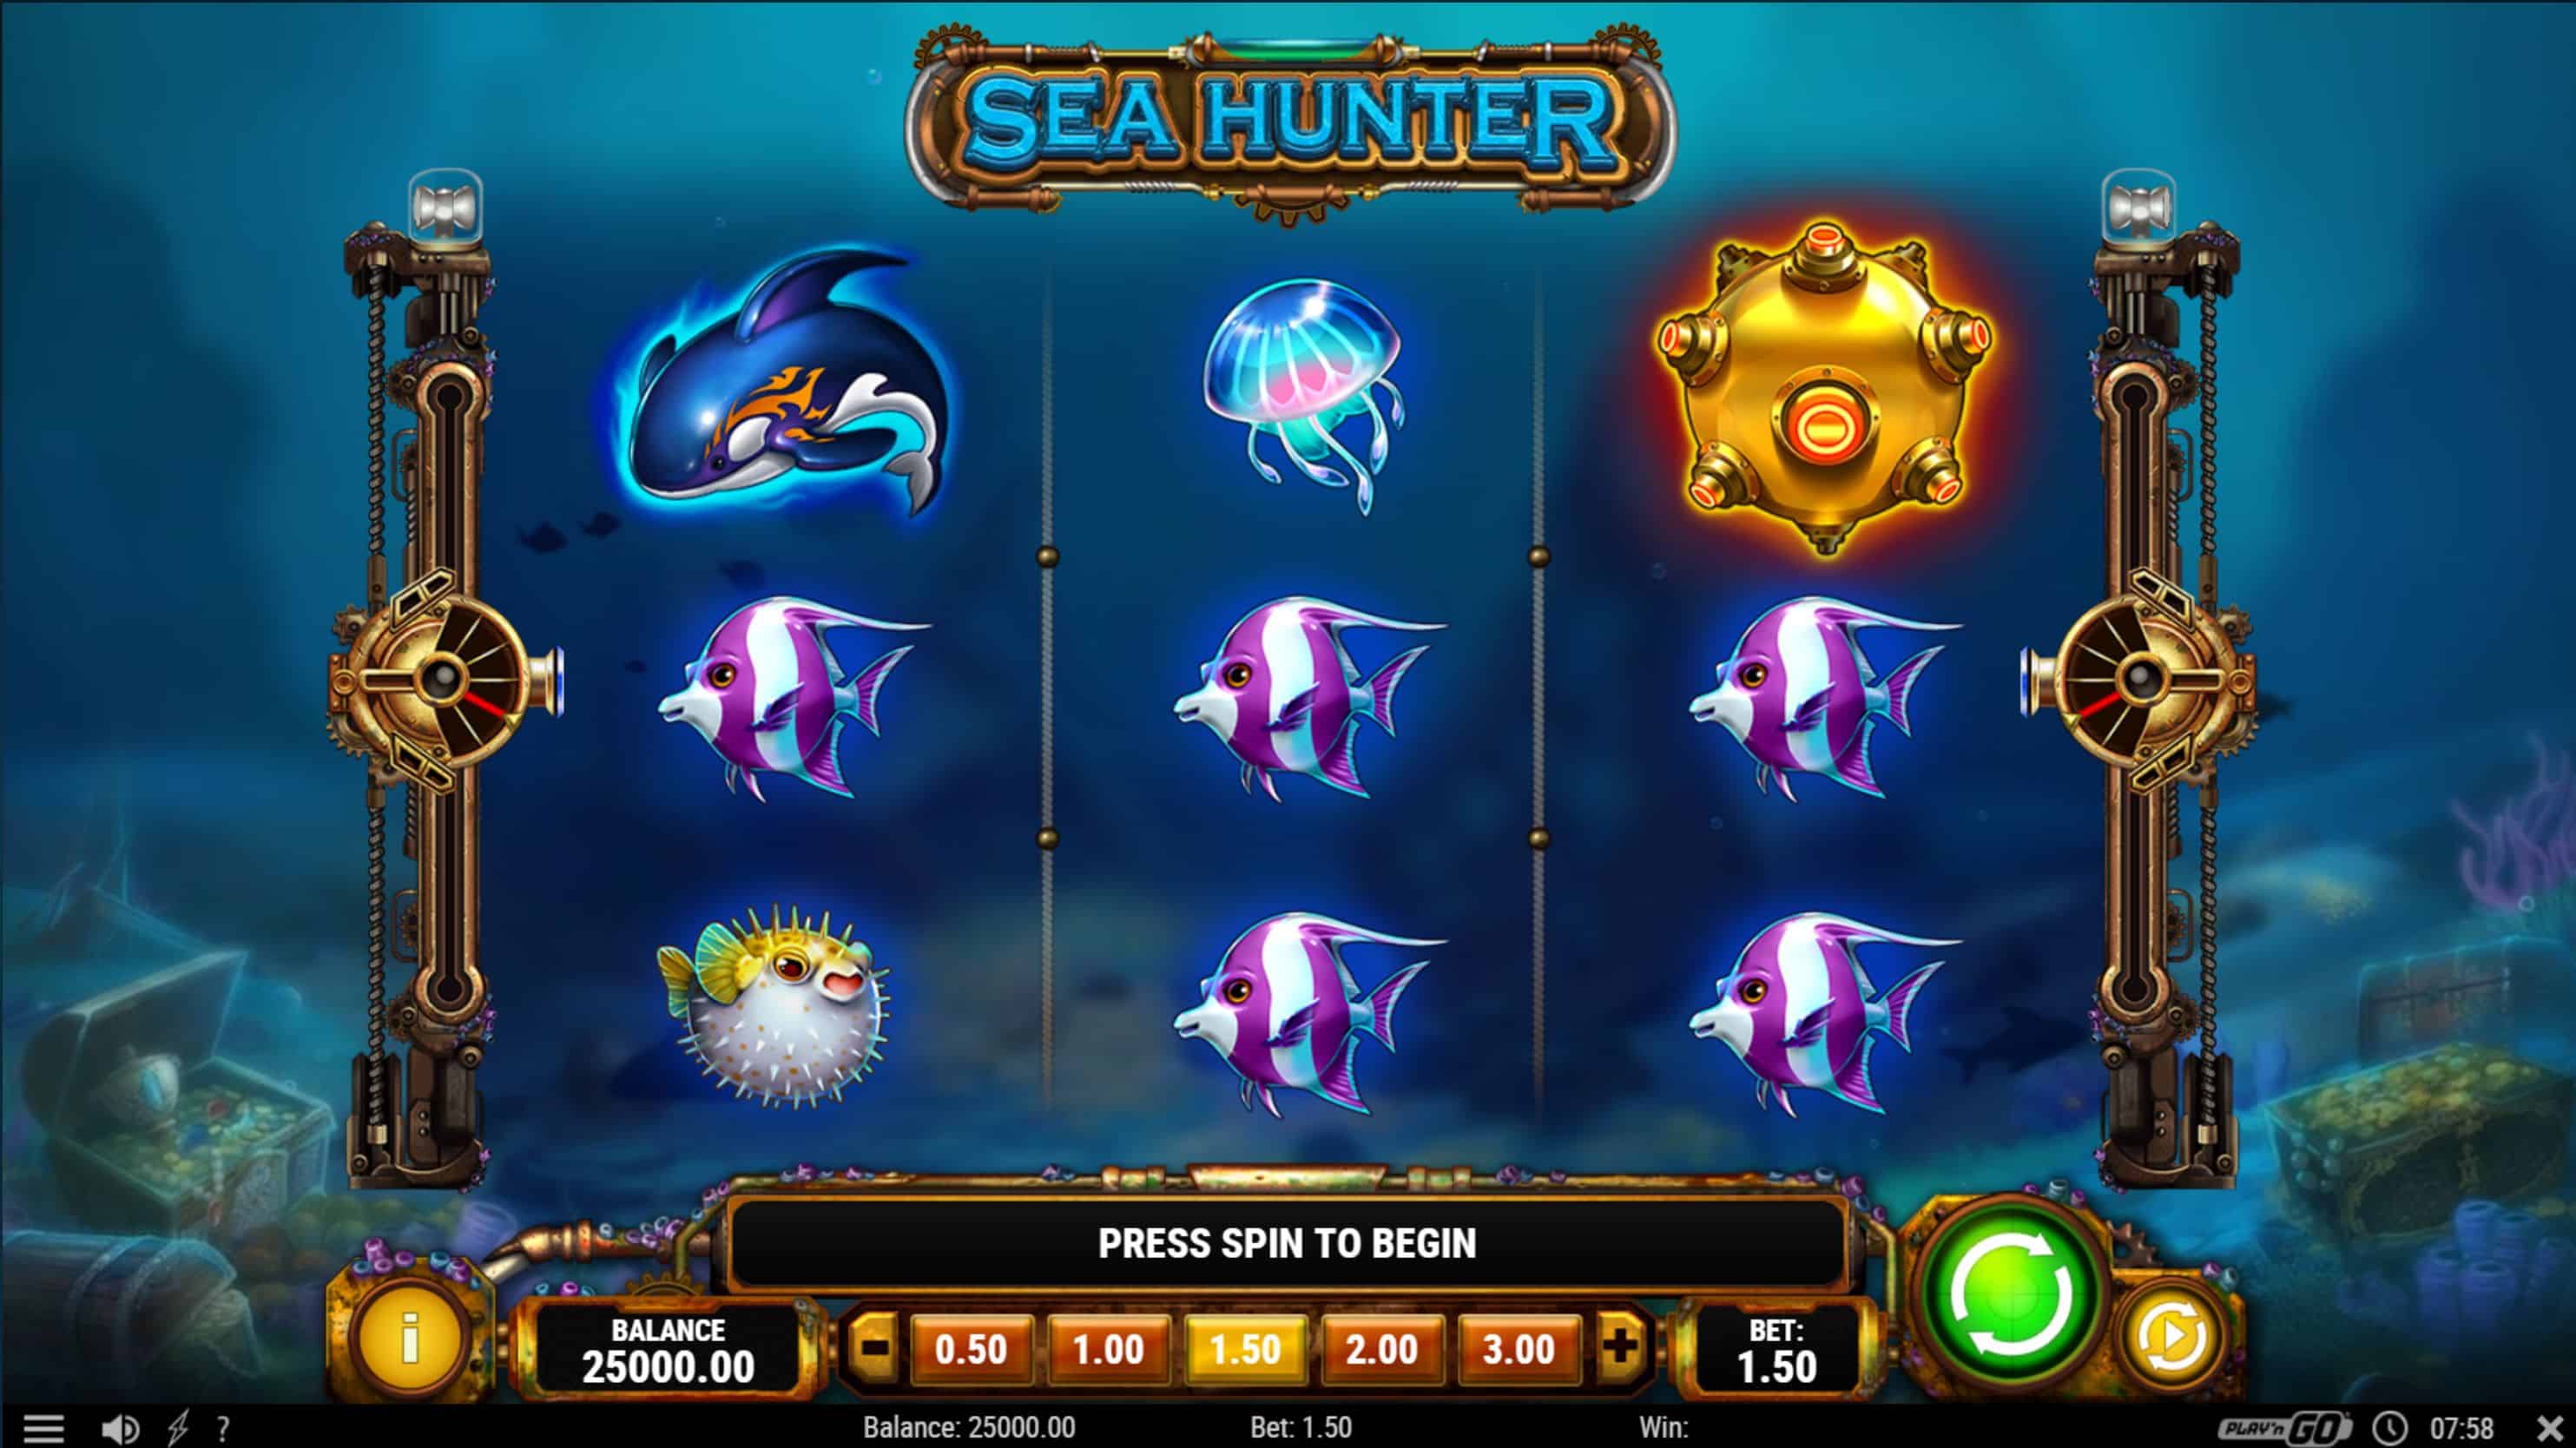 Sea Hunter Slot Game Free Play at Casino Ireland 01